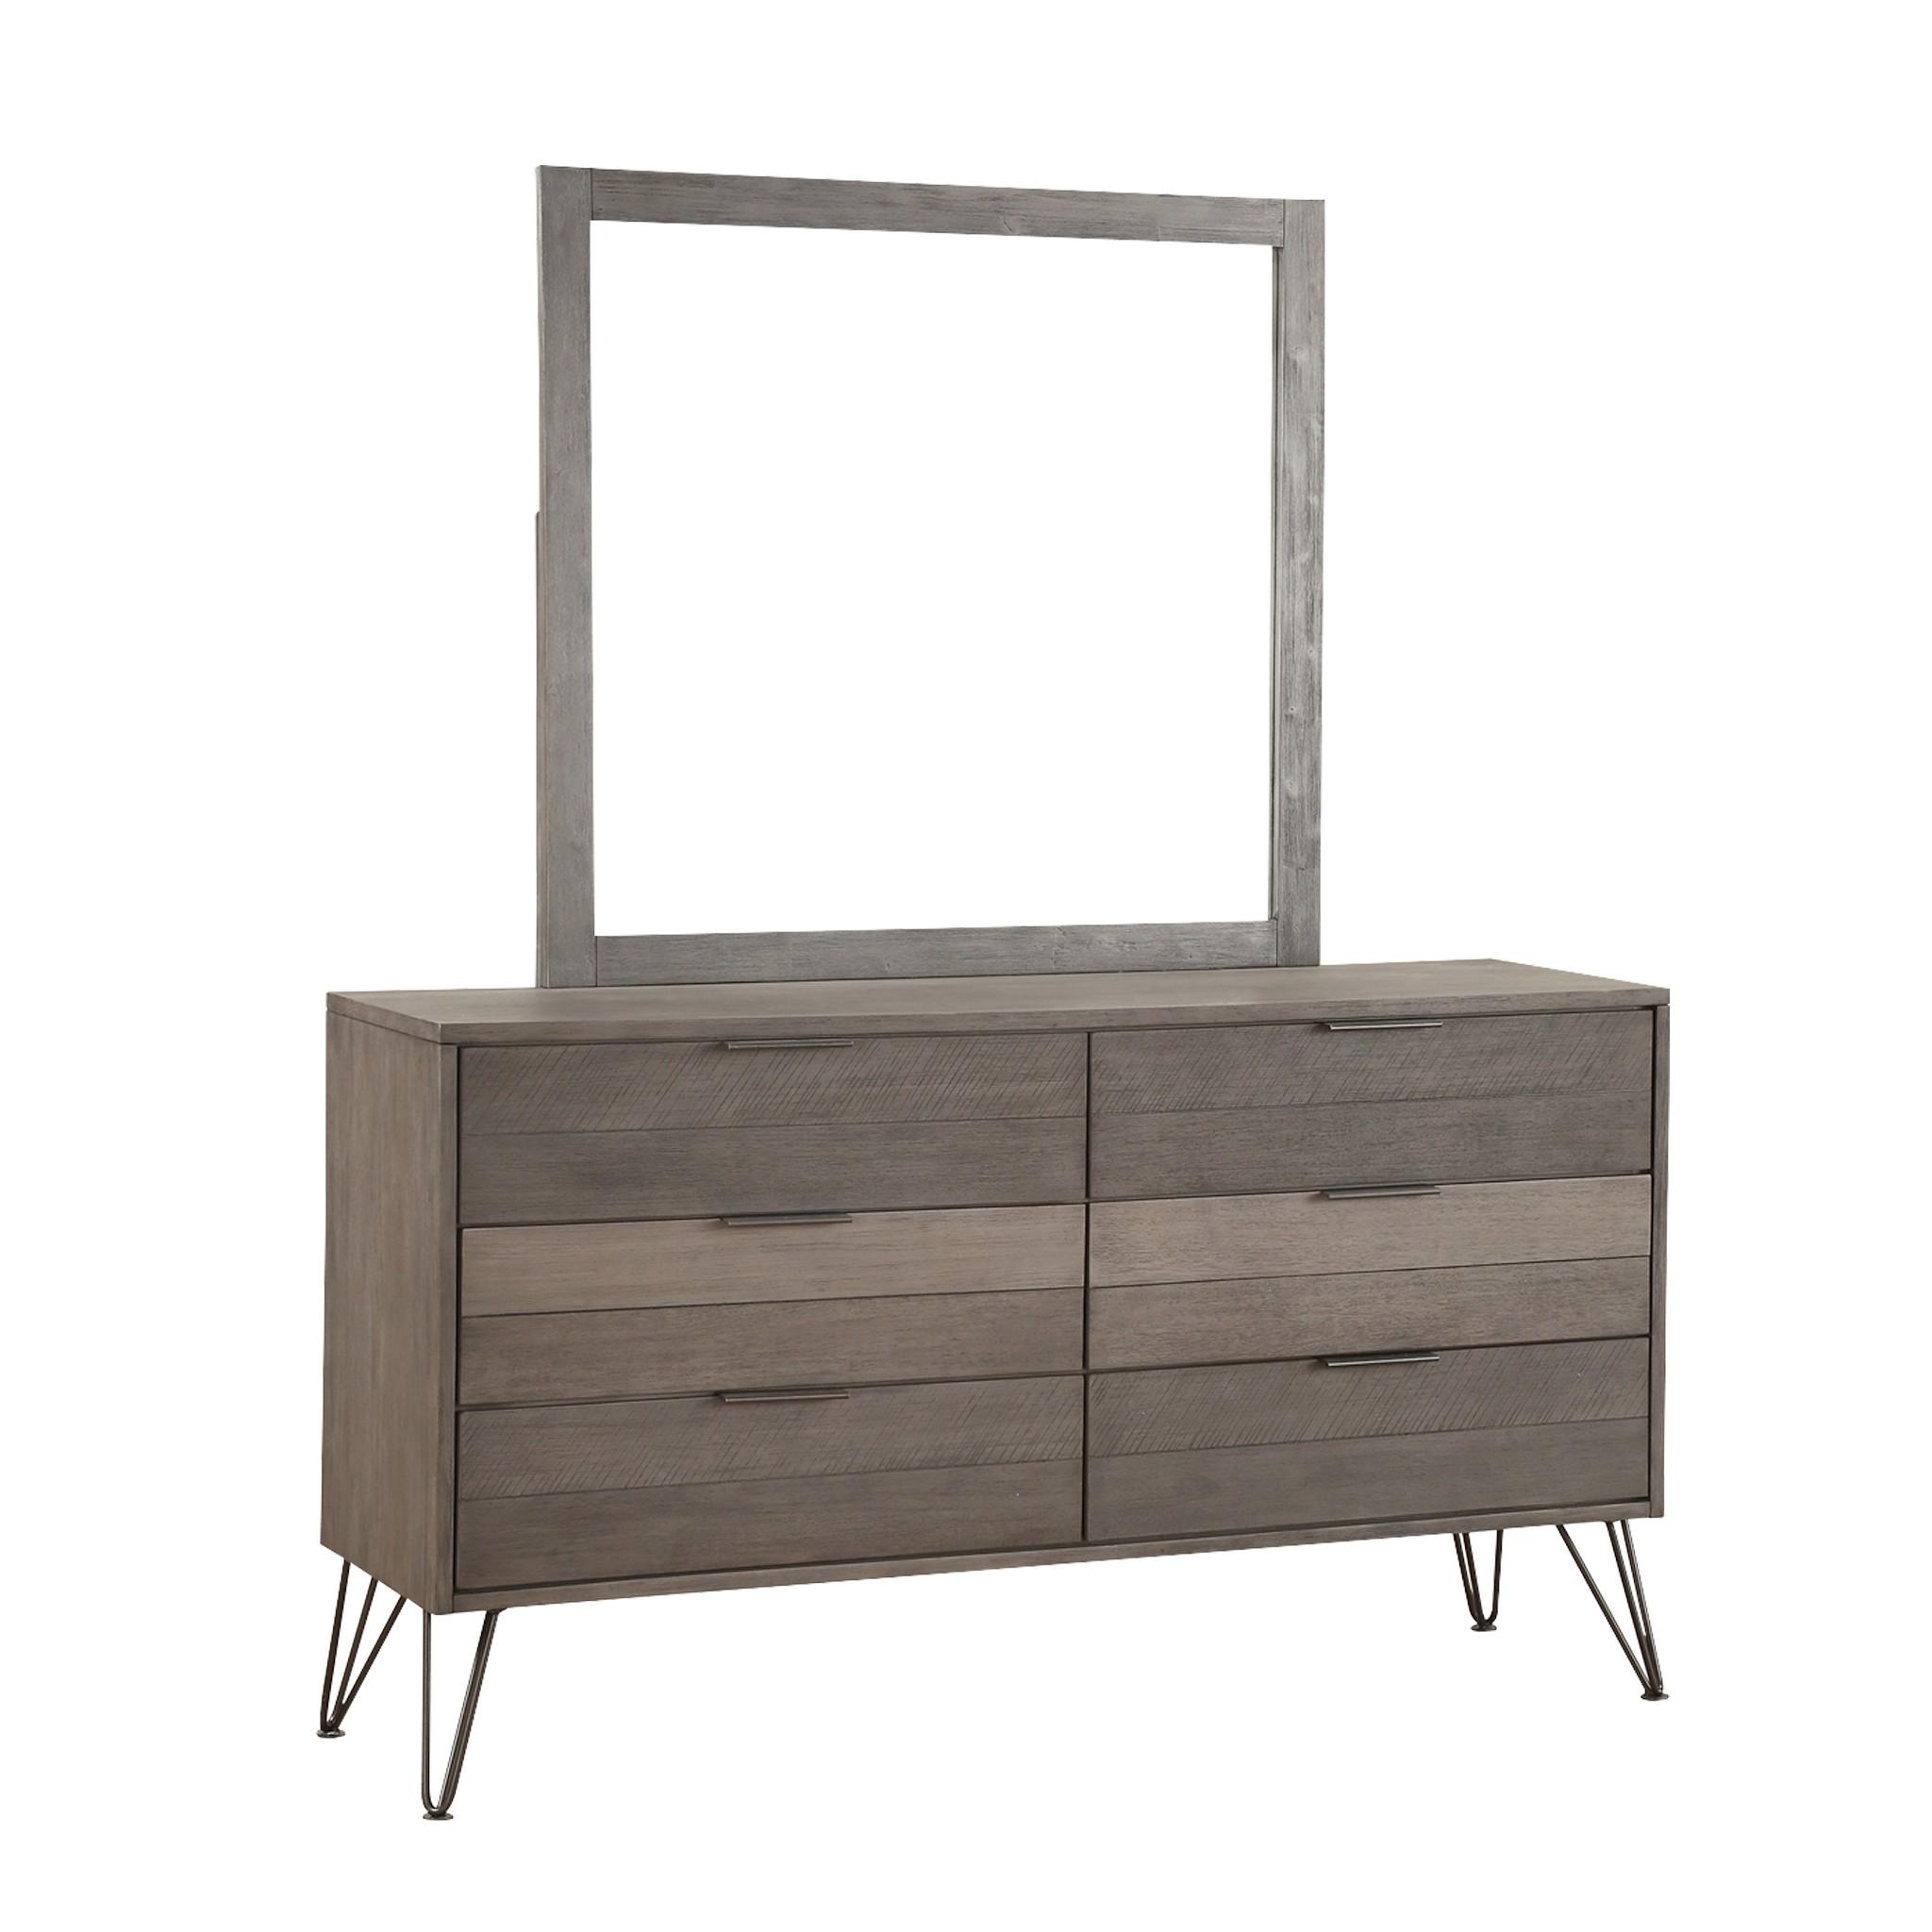 Contemporary Dresser w/Mirror 1604-5*6-2PC Urbanite 1604-5*6-2PC in Gray 